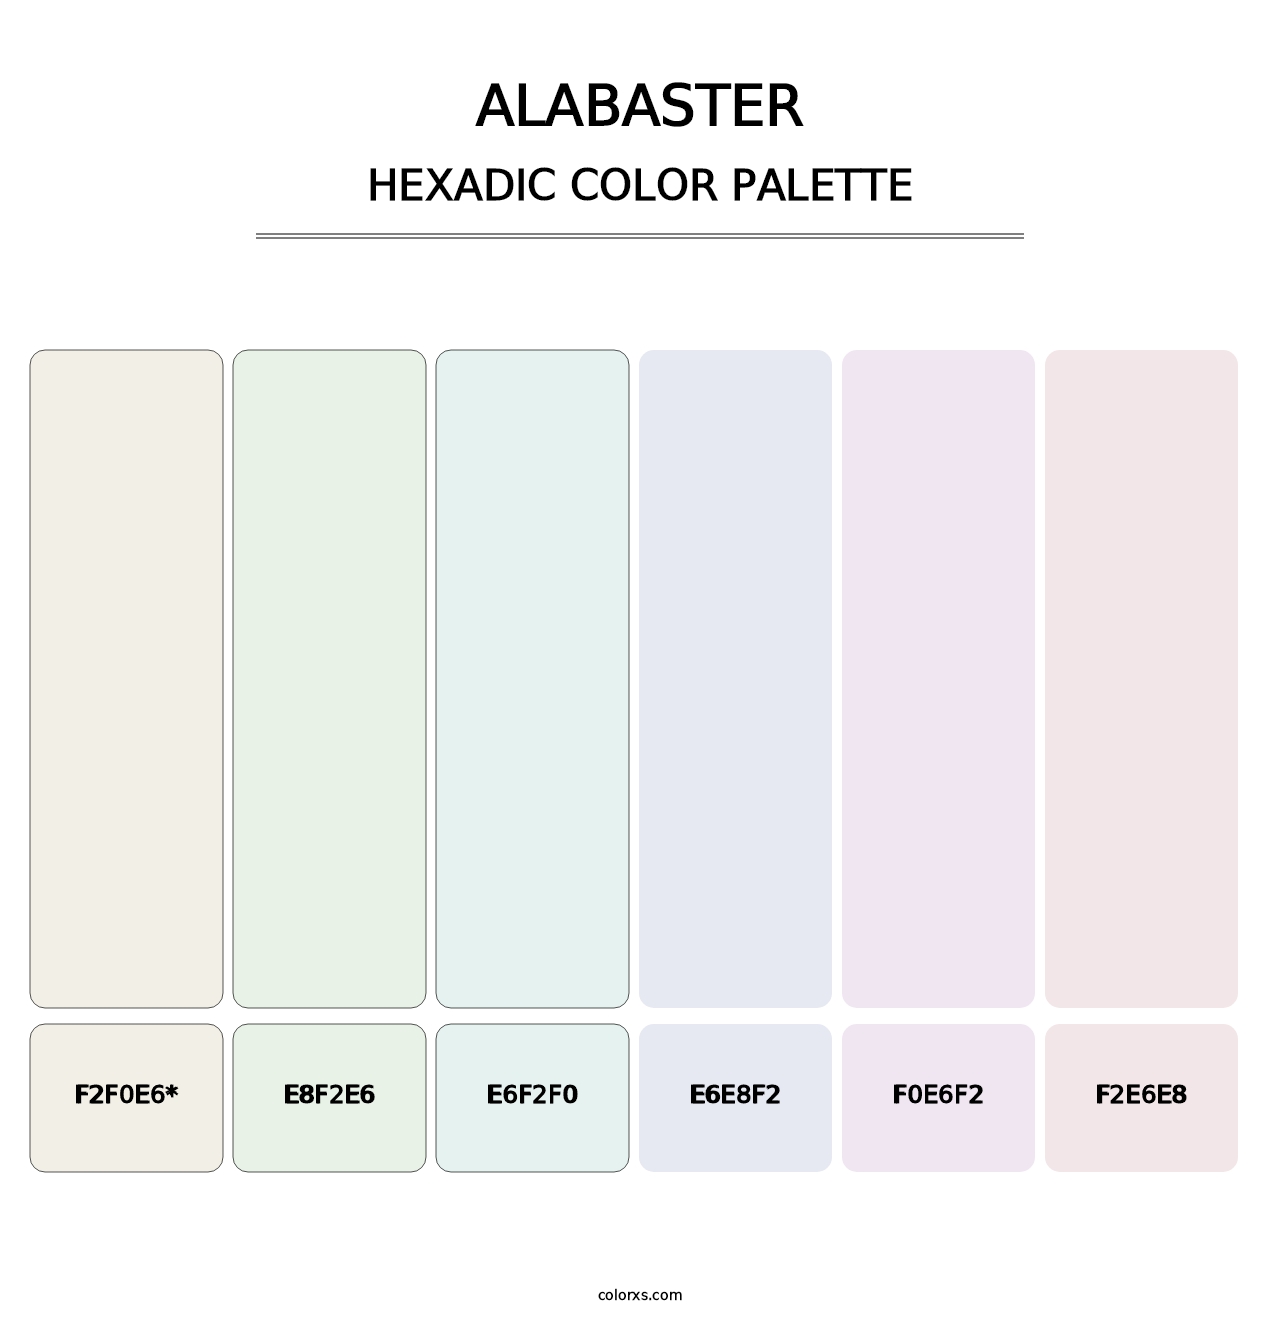 Alabaster - Hexadic Color Palette